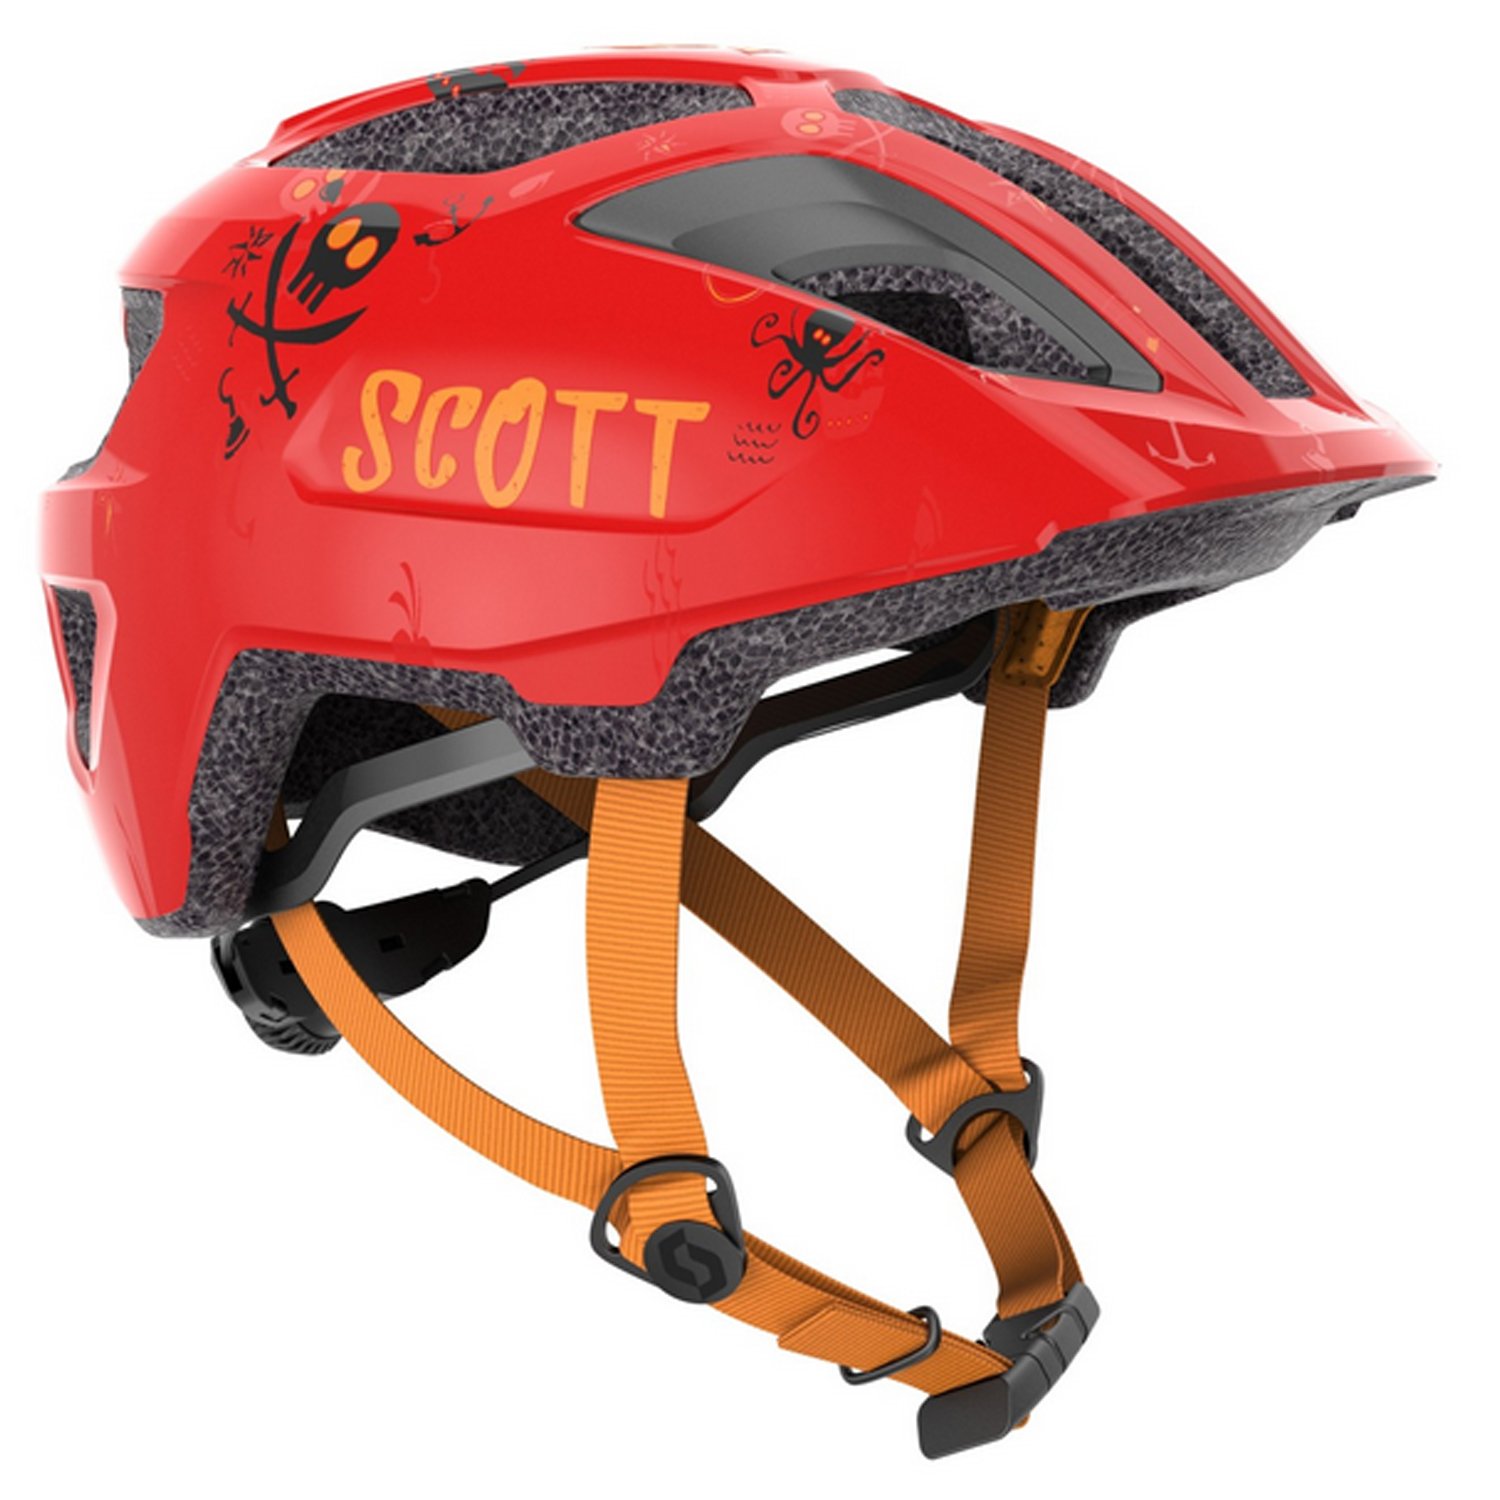 Велошлем SCOTT Spunto Kid (CE), детский, florida red, ES275235-6909 крылья велосипедные hog yfp 37 20 24 с интегрированным задним габаритным фонарем пластик черные hog 37